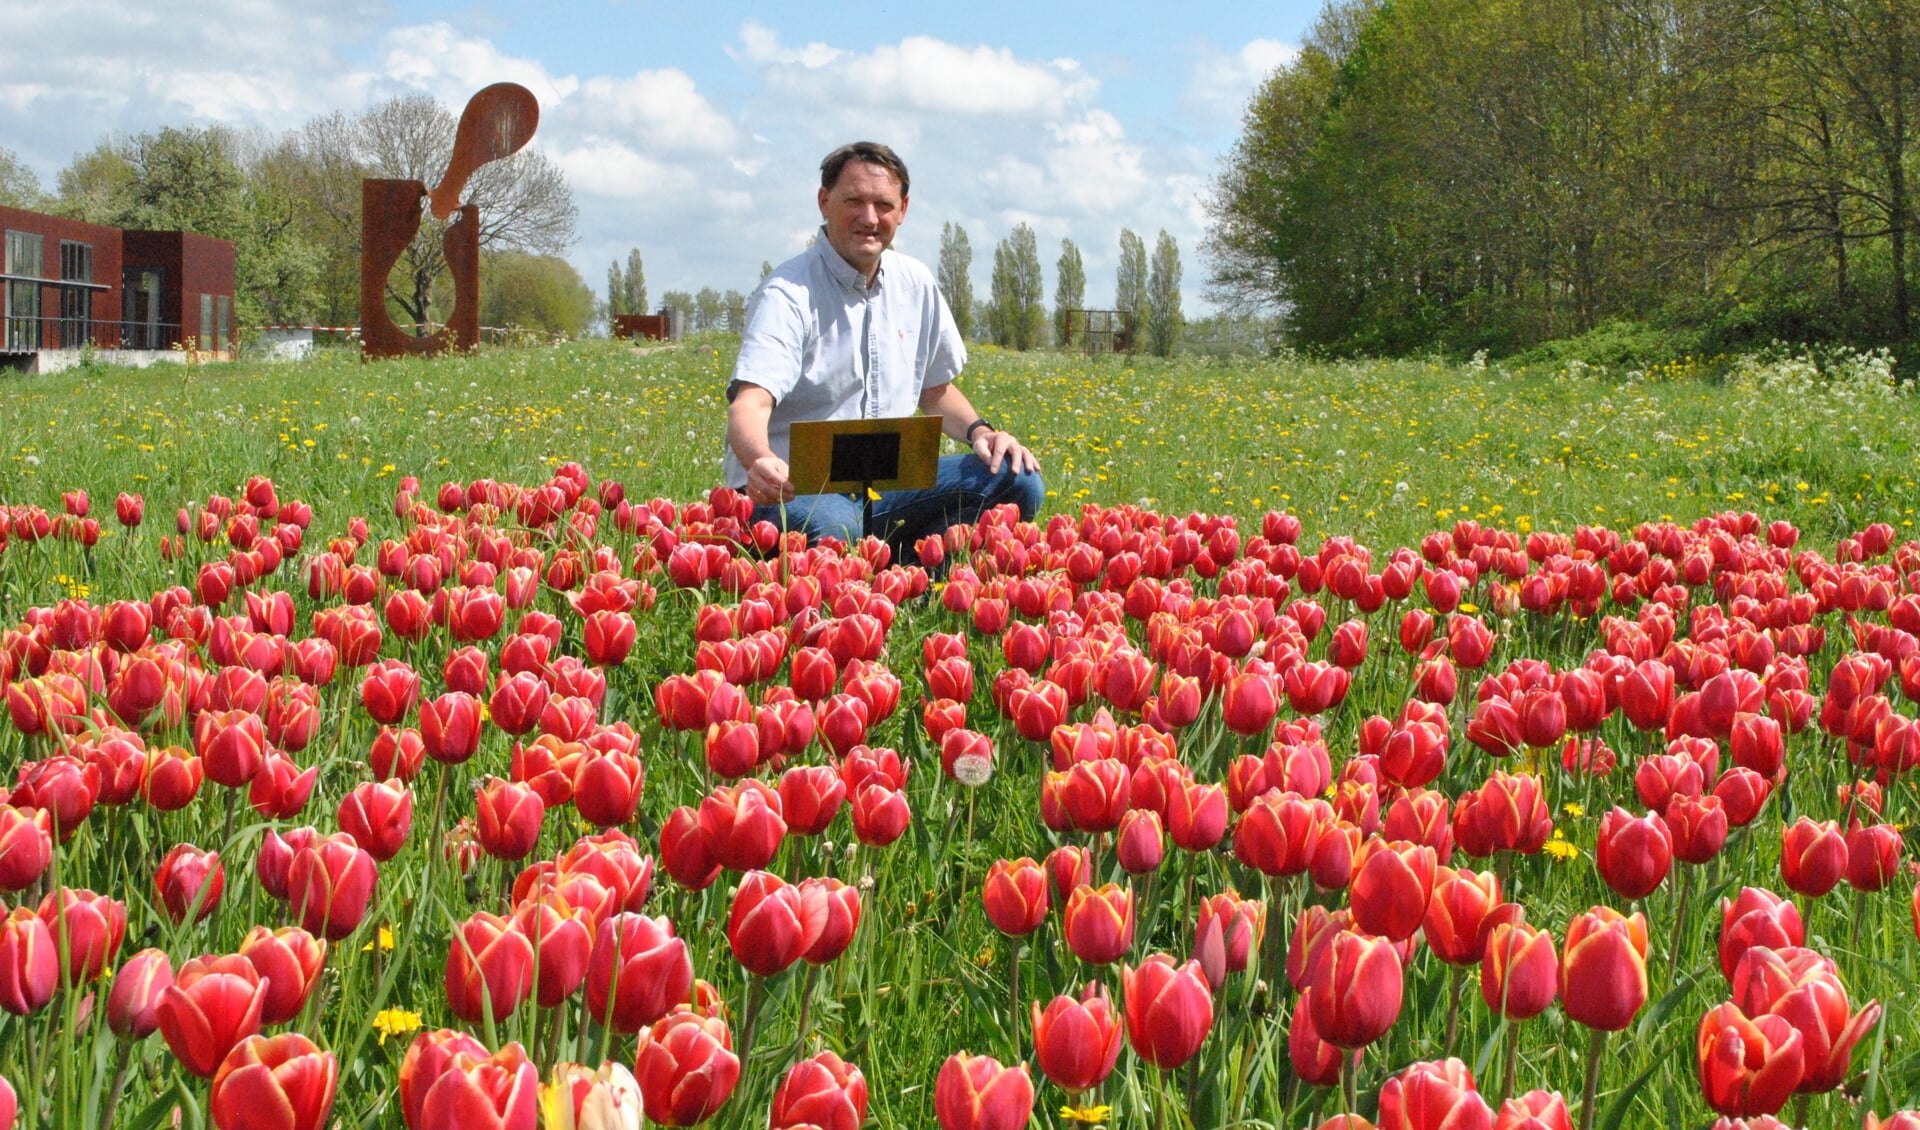 Voorzitter Hans Lodder bij het tulpenveldje, waar hij deze week een plaatje onthulde met daarop informatie over het doel van de tulpenactie 